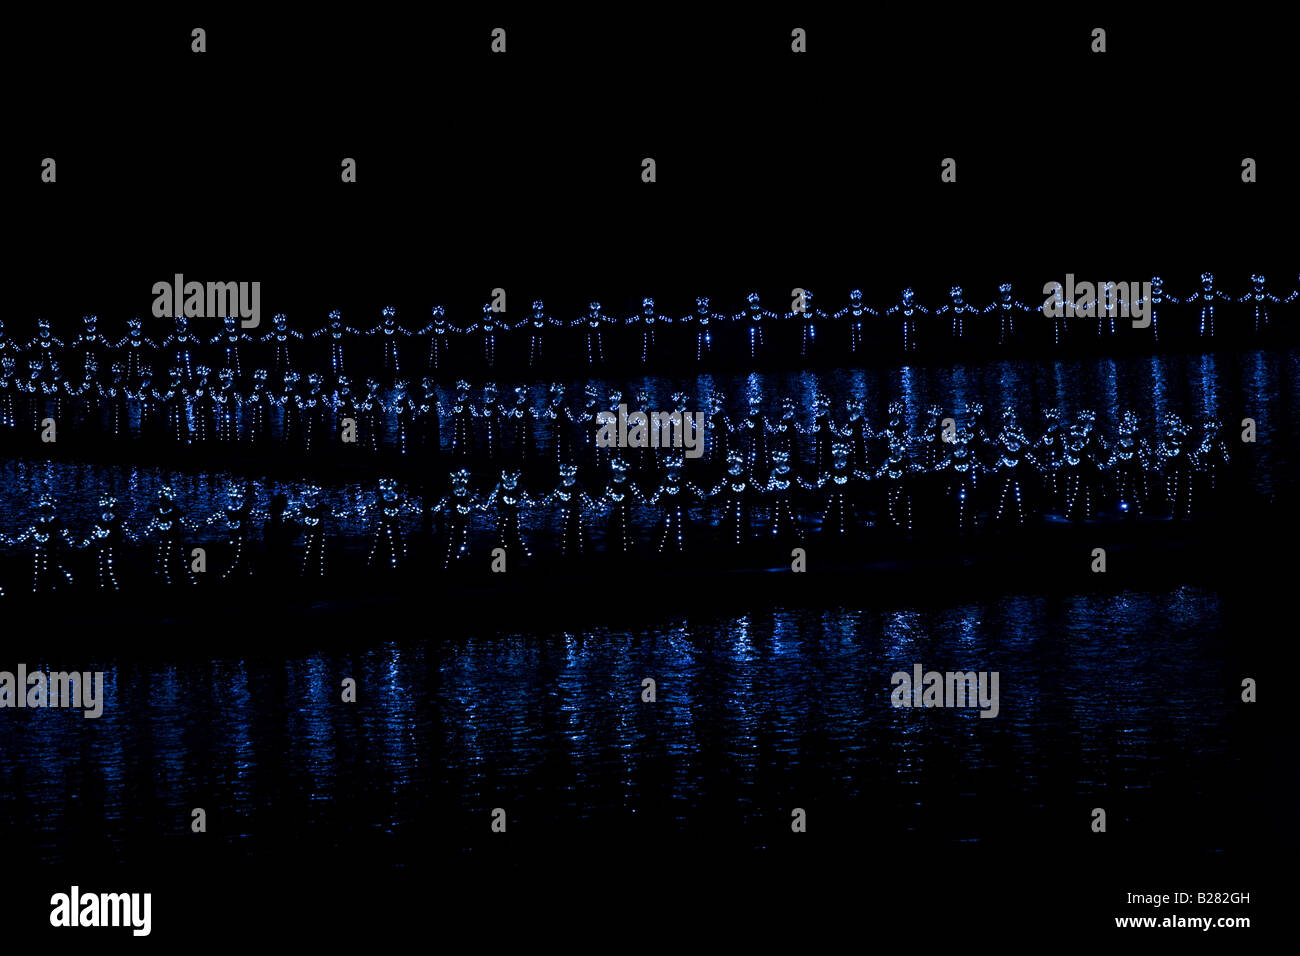 Les membres de l'Impression Liu Sanjie effectuant un spectacle son et lumière réalisé par Zhang Yimou Chine Yangshuo Banque D'Images